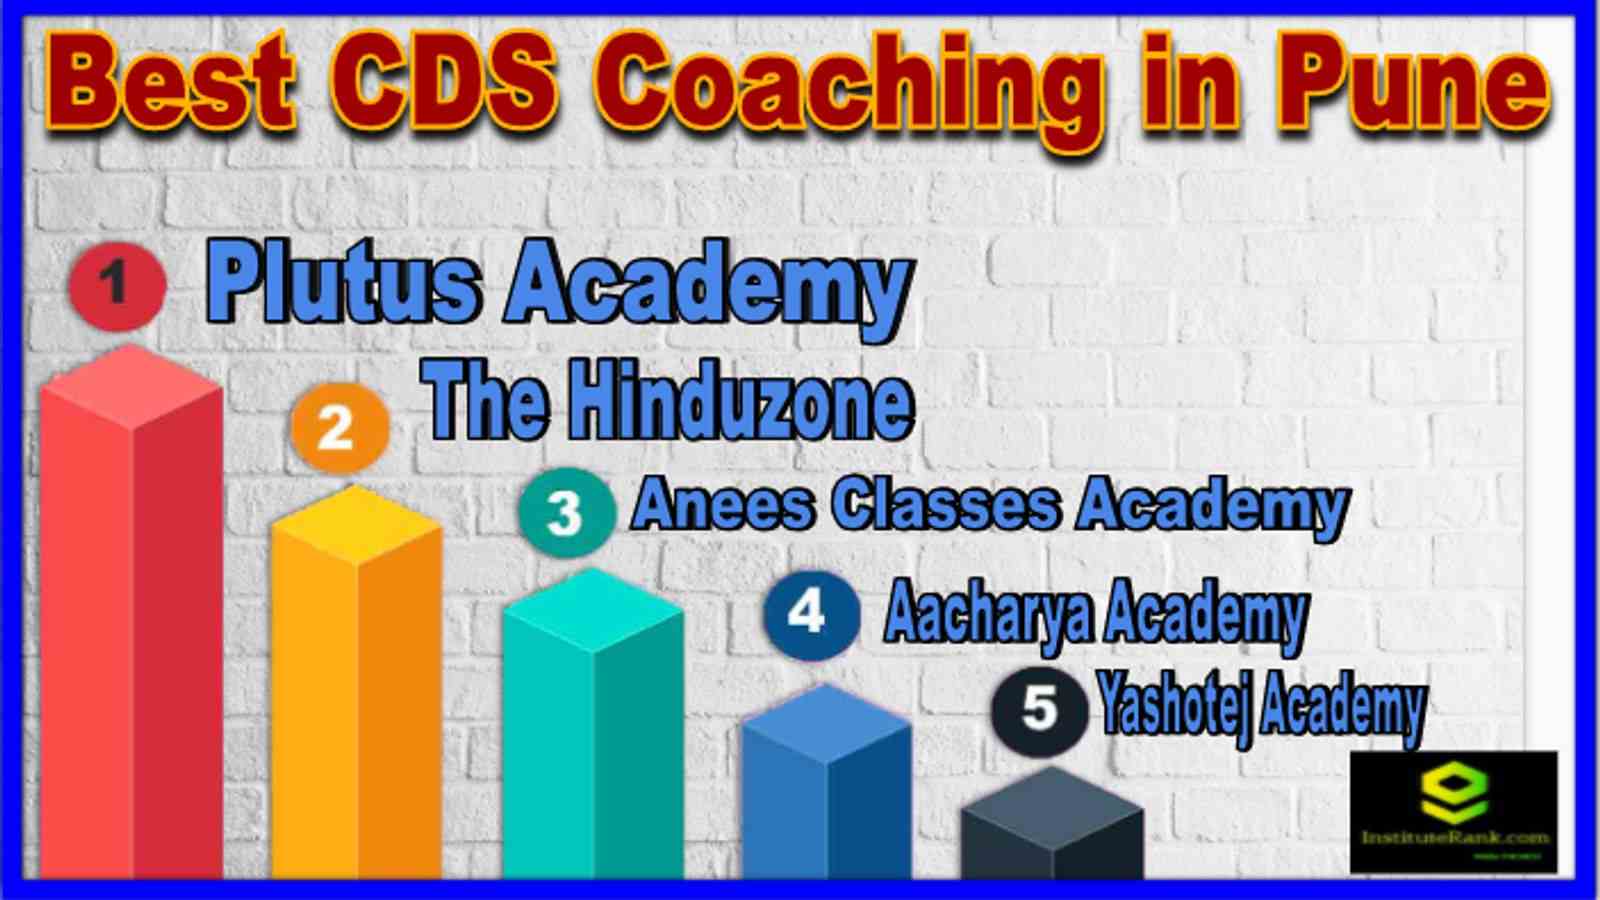 Top CDS Coaching in Pune